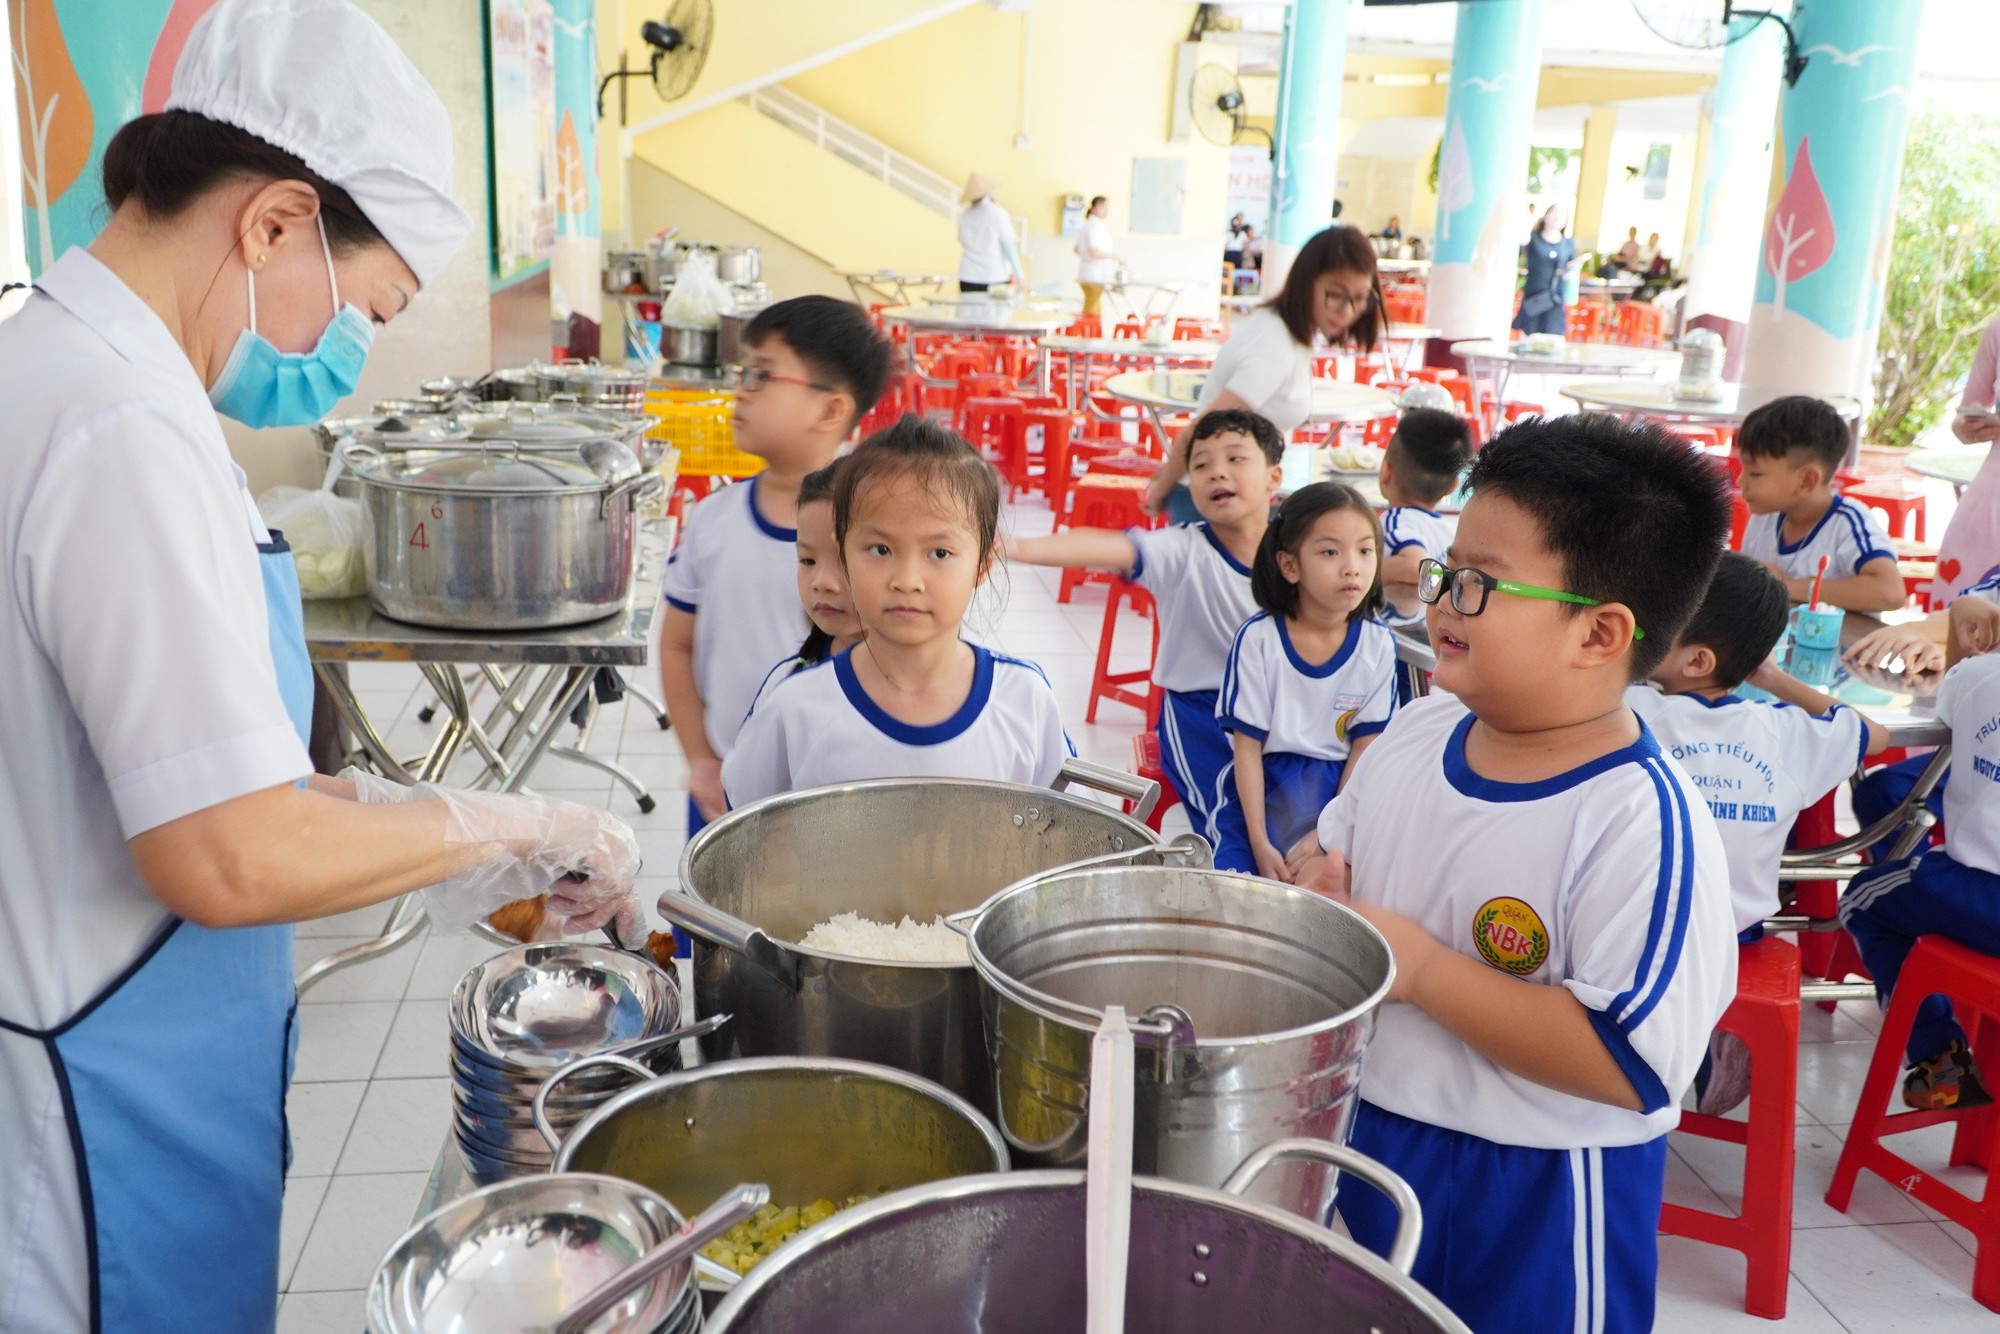 Trường học tăng cường giám sát bữa ăn bán trú, học sinh được chấm điểm chất lượng - Ảnh 1.